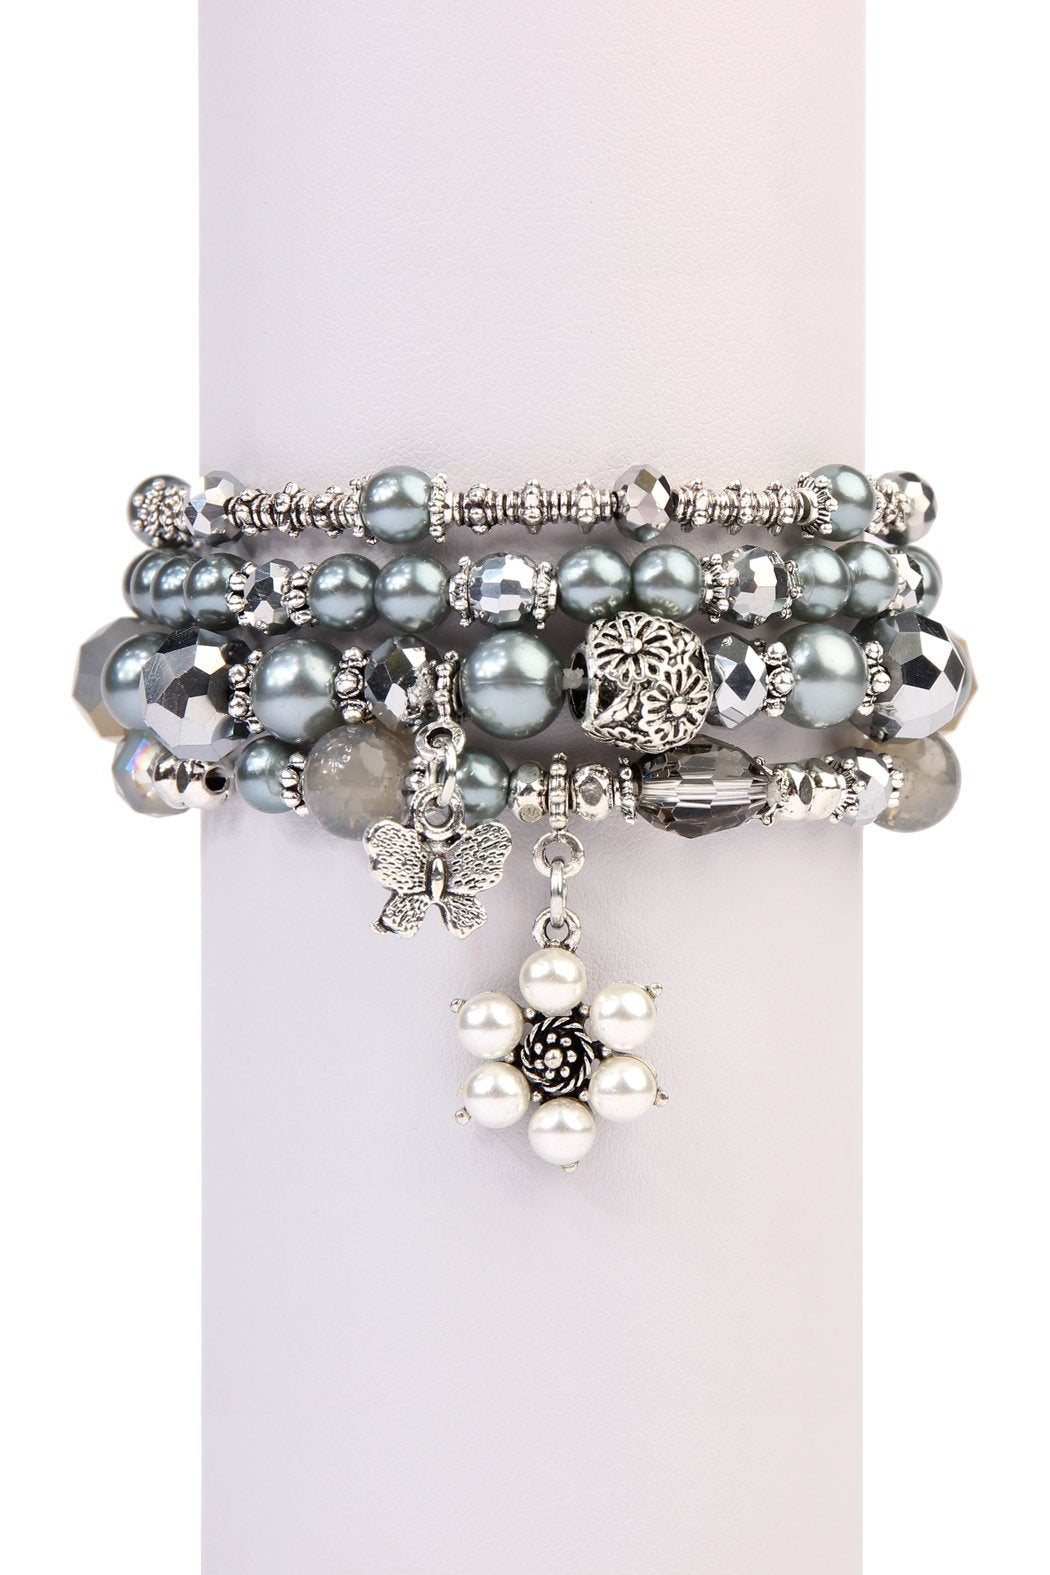 Hdb2076 - Butterfly Pearl Classy Stackable Bracelet - LOLA LUXE